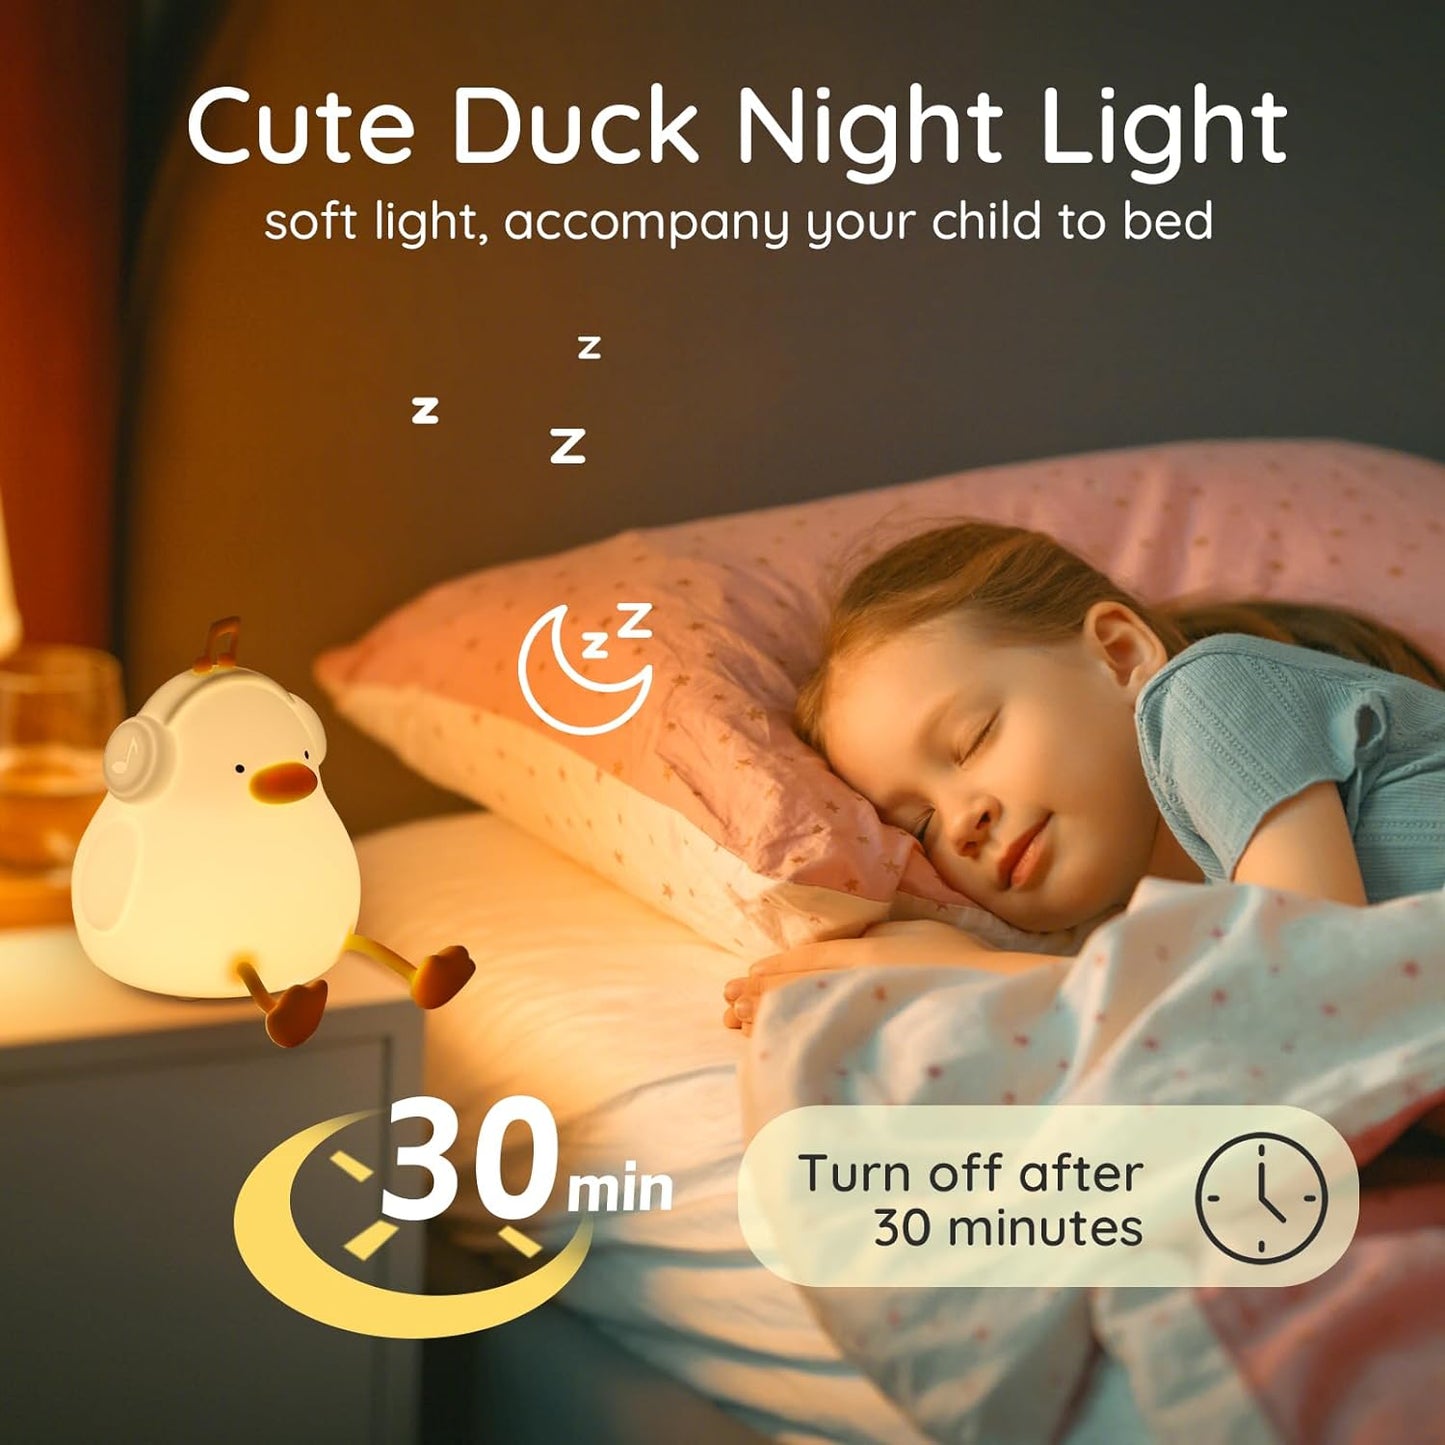 Cute Little Duck Night Light